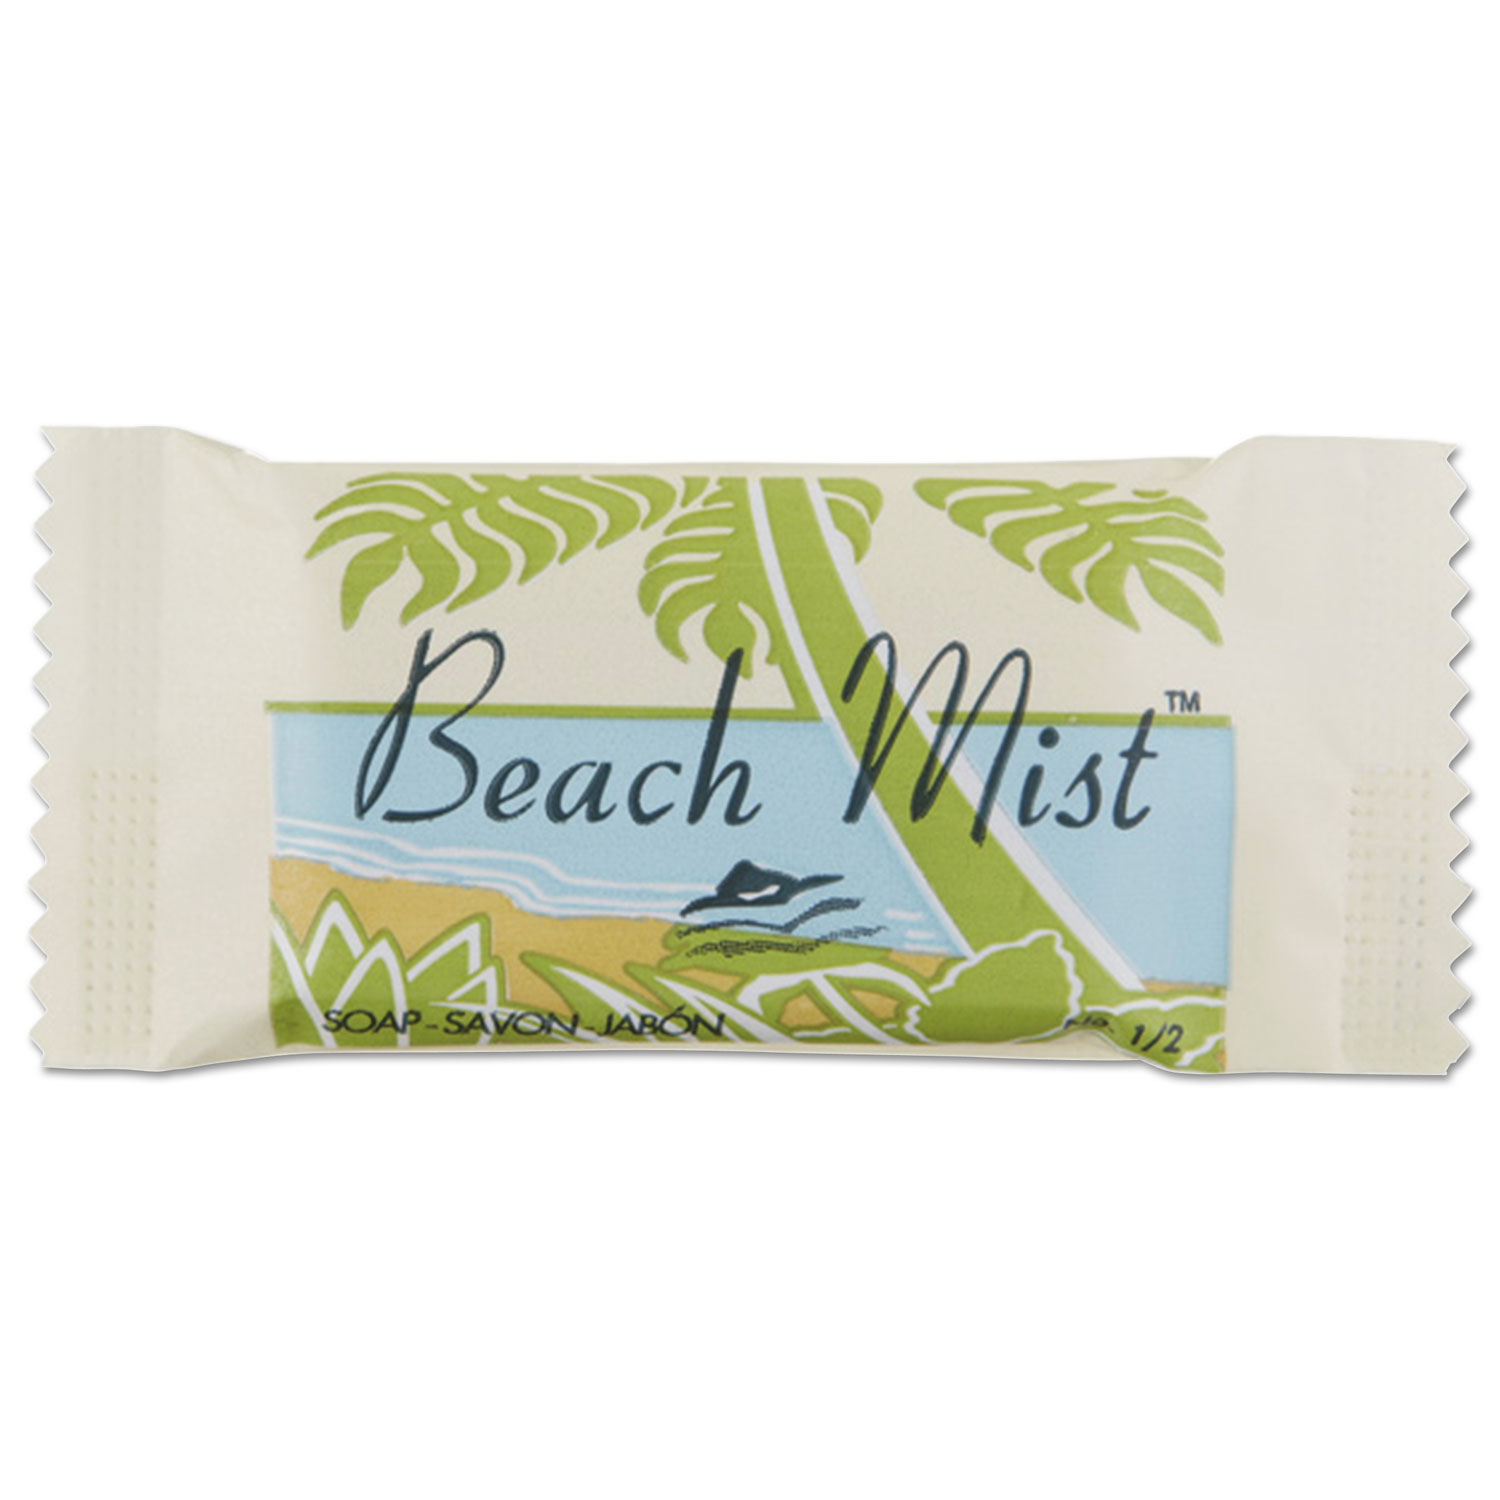 Face and Body Soap, Beach Mist Fragrance, # 1/2 Bar, 1000/Carton